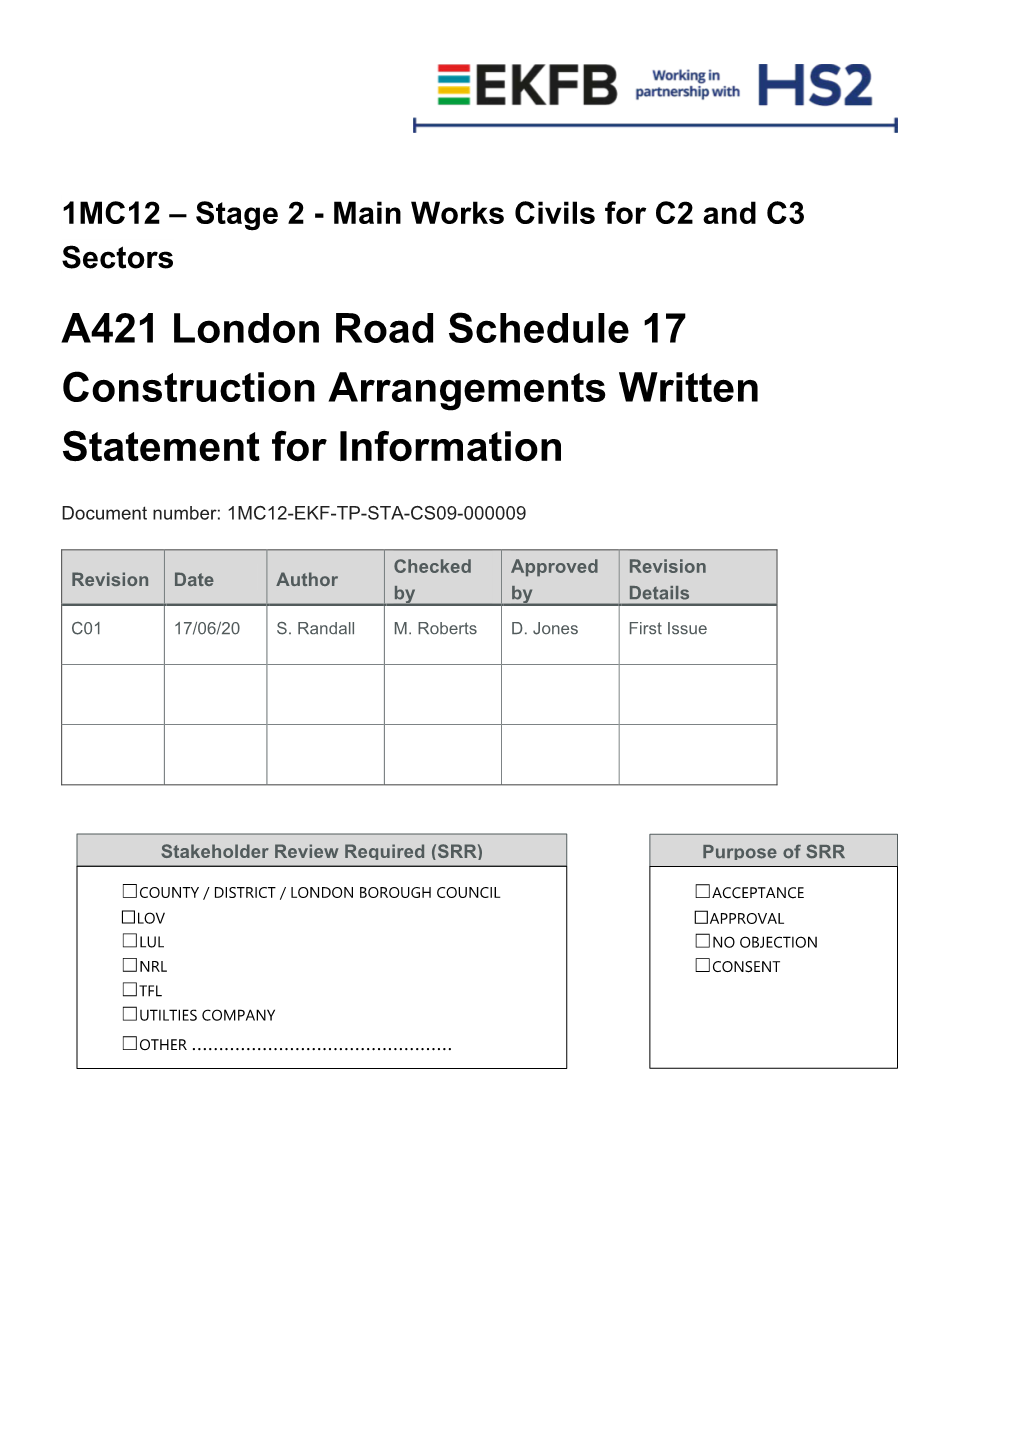 A421 London Road Construction Arrangements